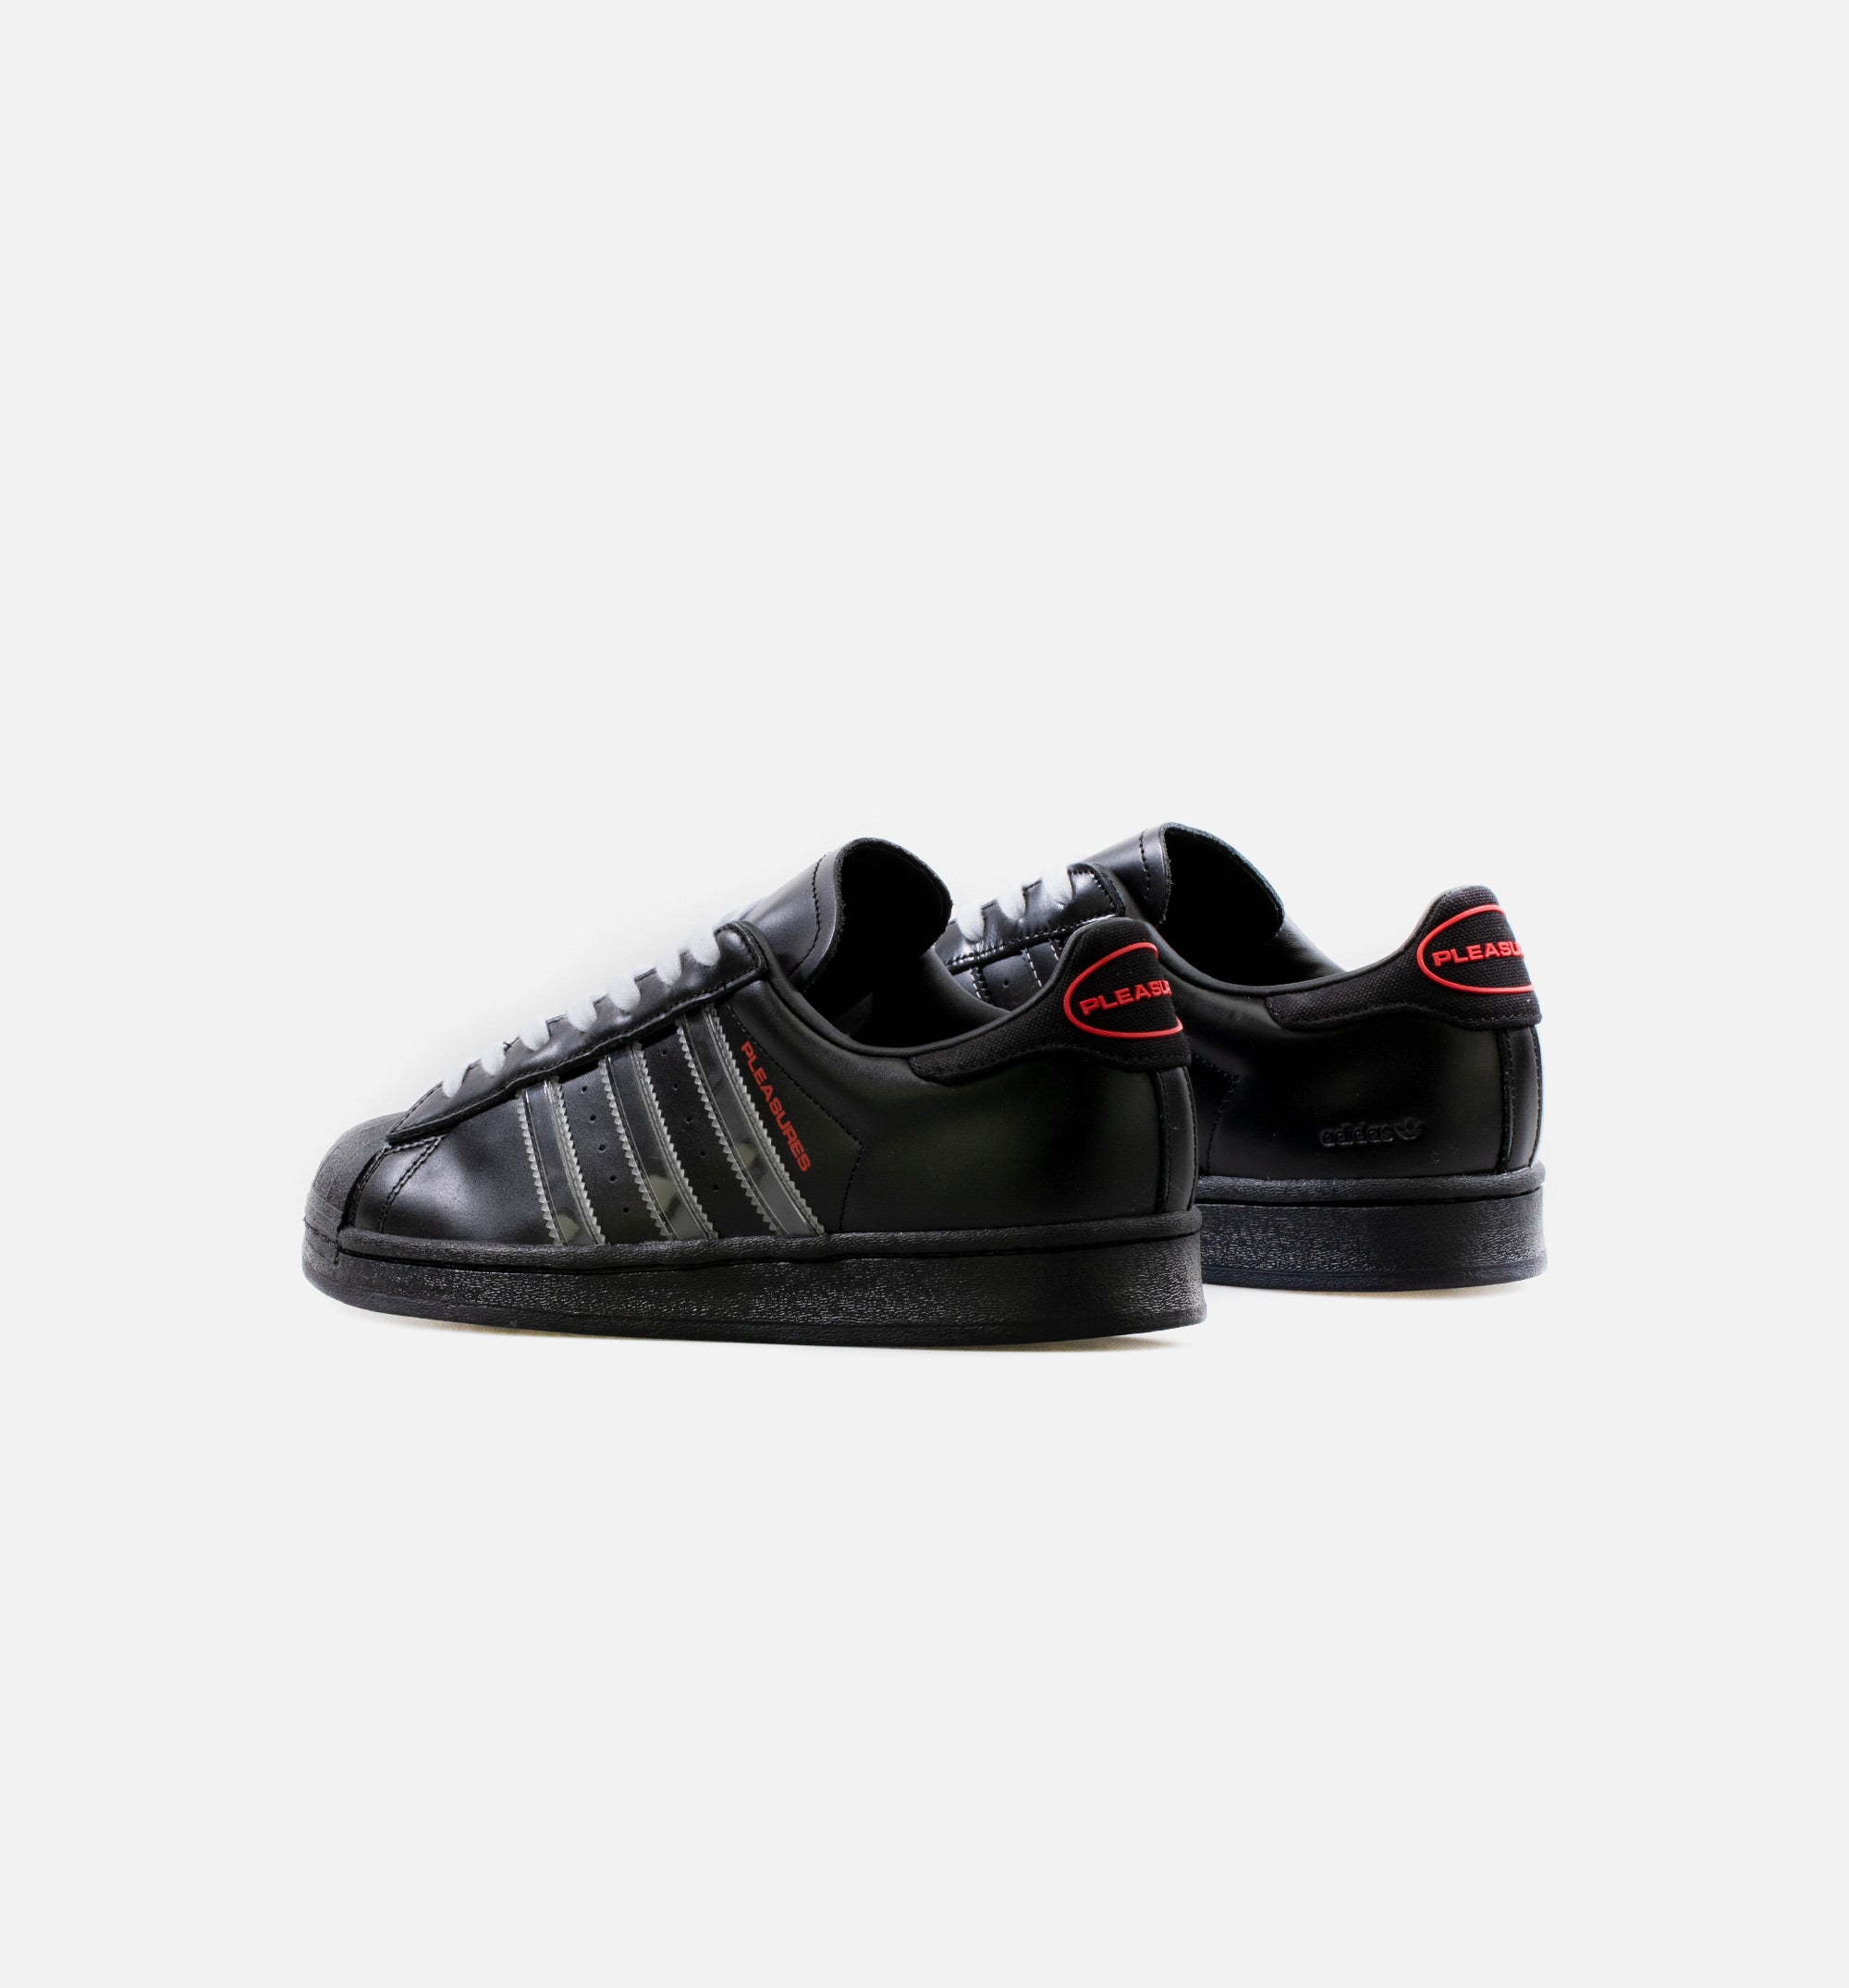 Adidas Consortium GY5691 adidas Consortium X Pleasures Superstar Shoe - Black/White – ShopNiceKicks.com